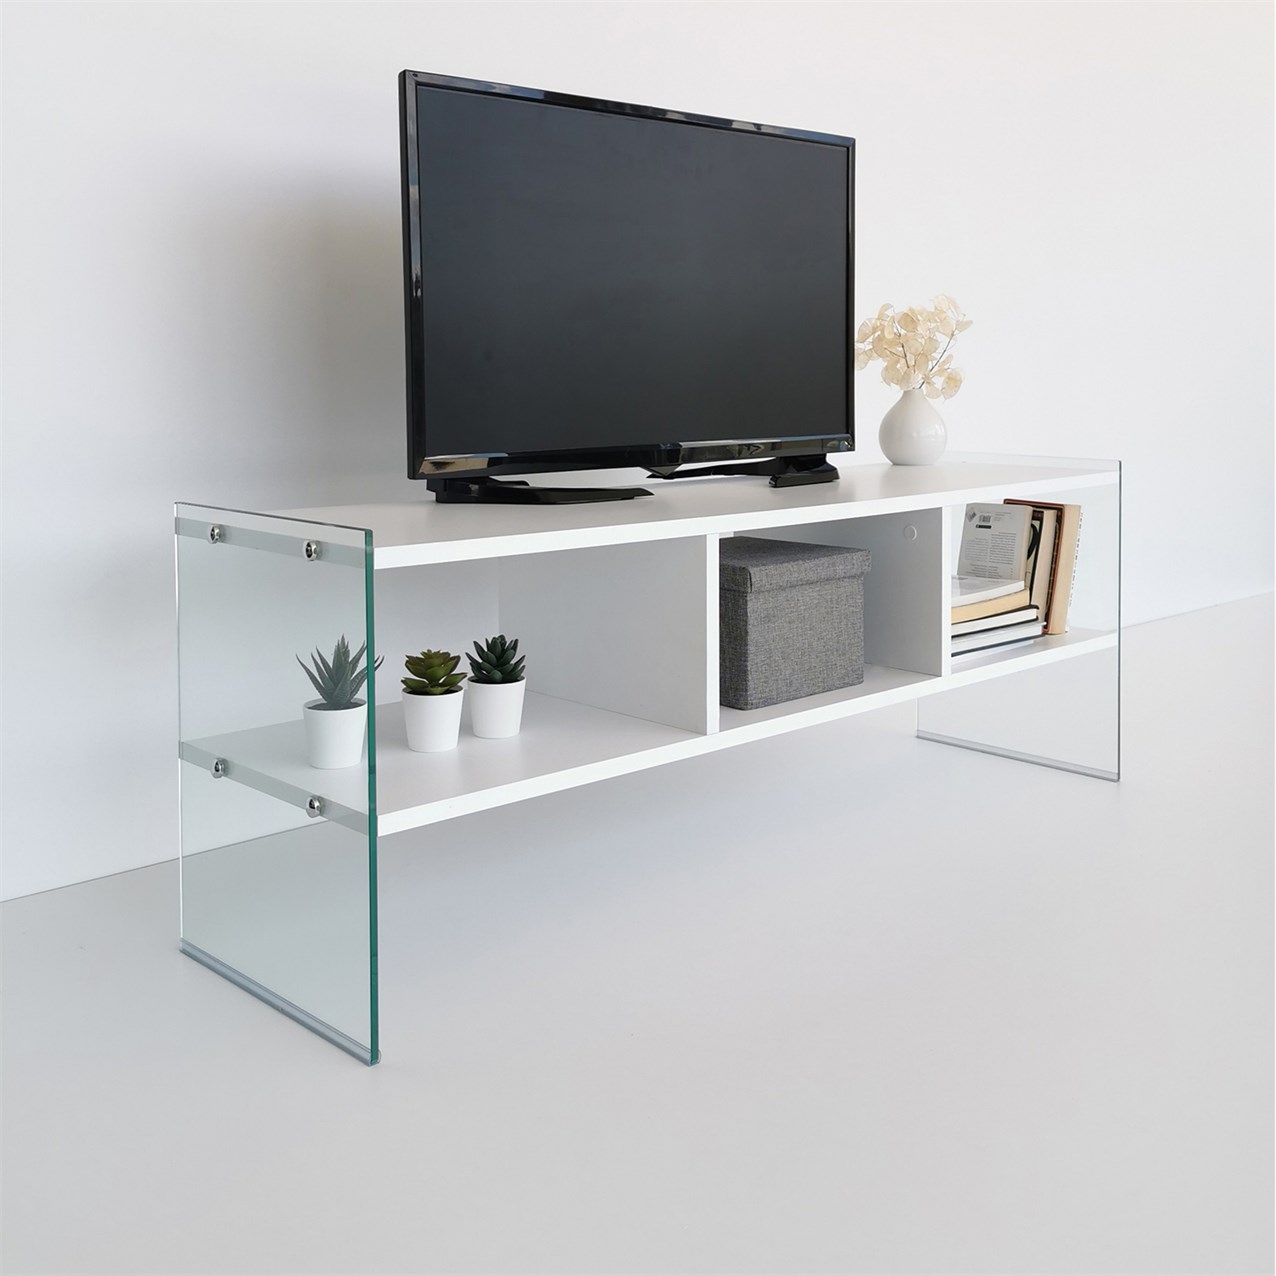 NEOstill - Majör Tv Sehpası Beyaz 120 cm TV400